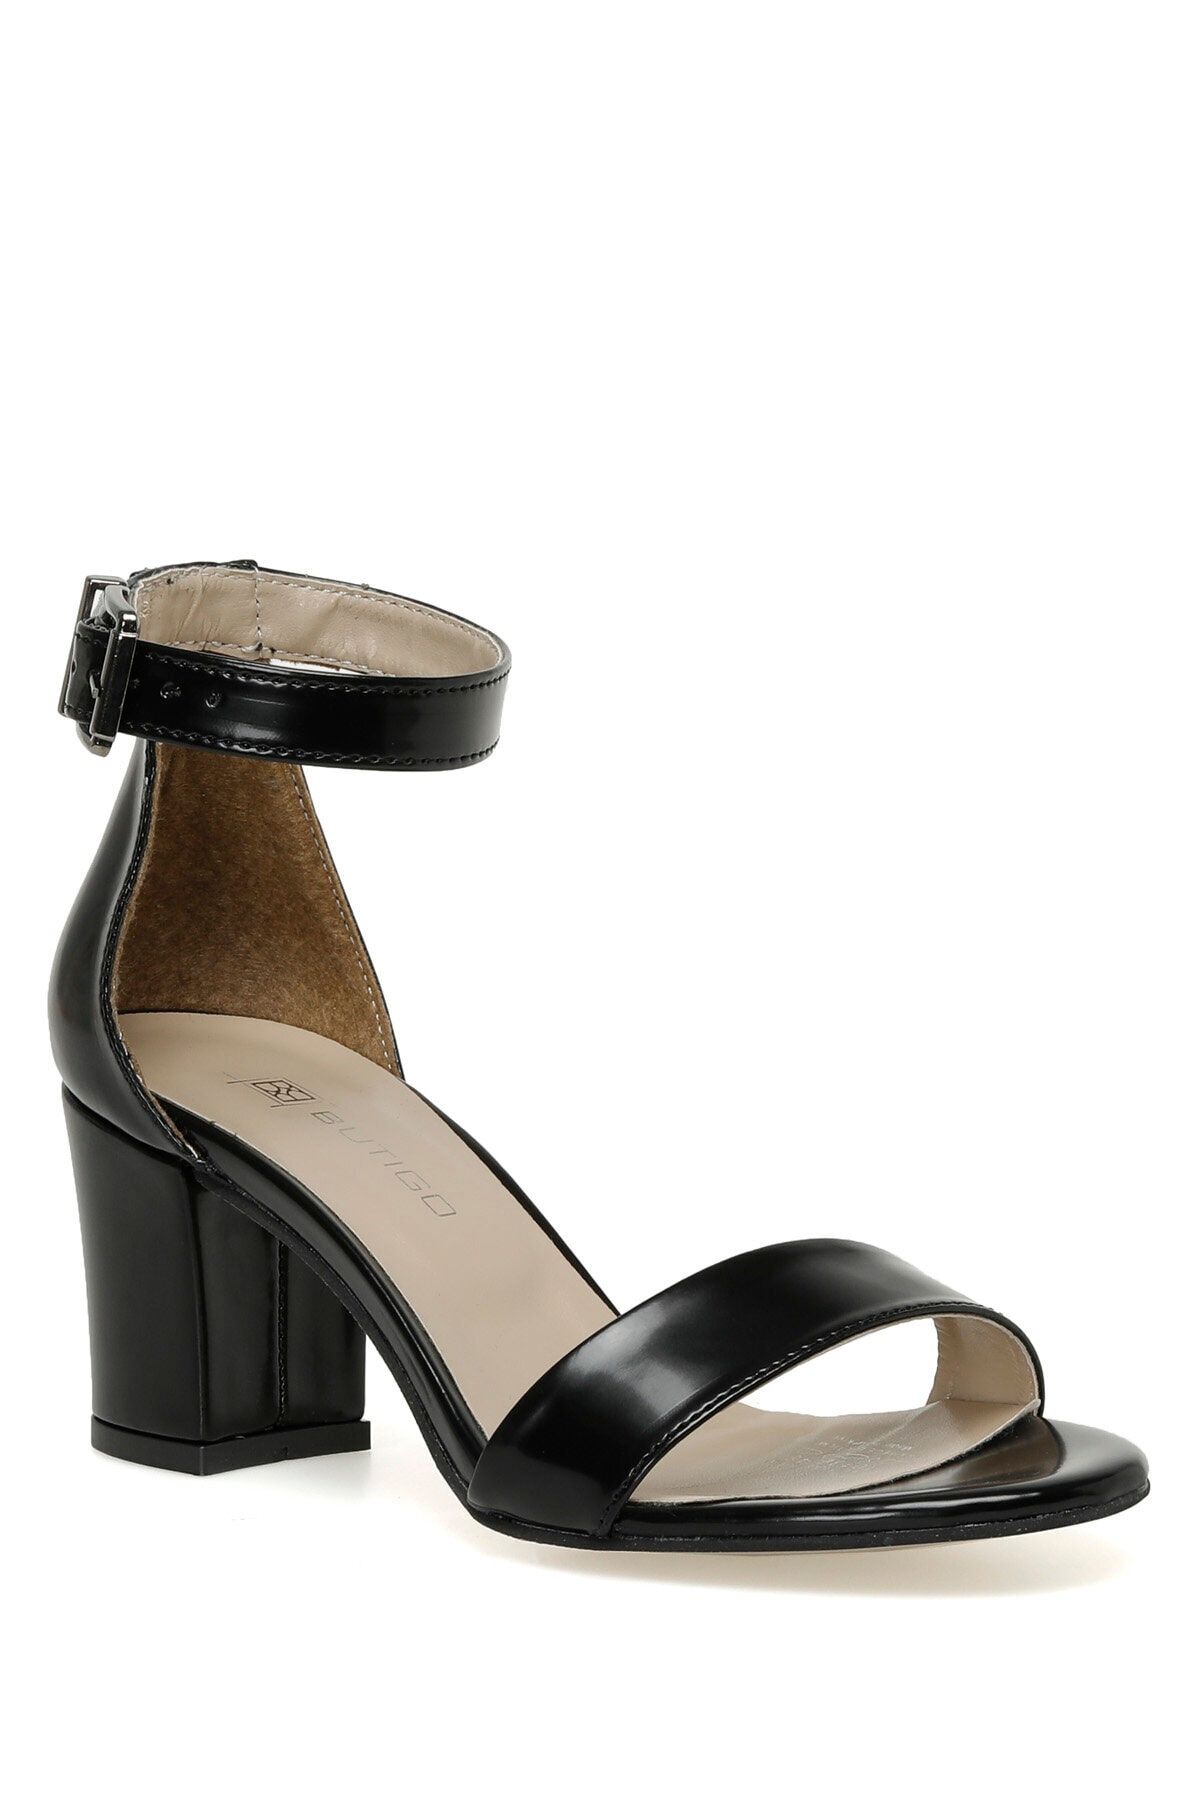 Butigo S1100-1 3fx Siyah Kadın Topuklu Sandalet